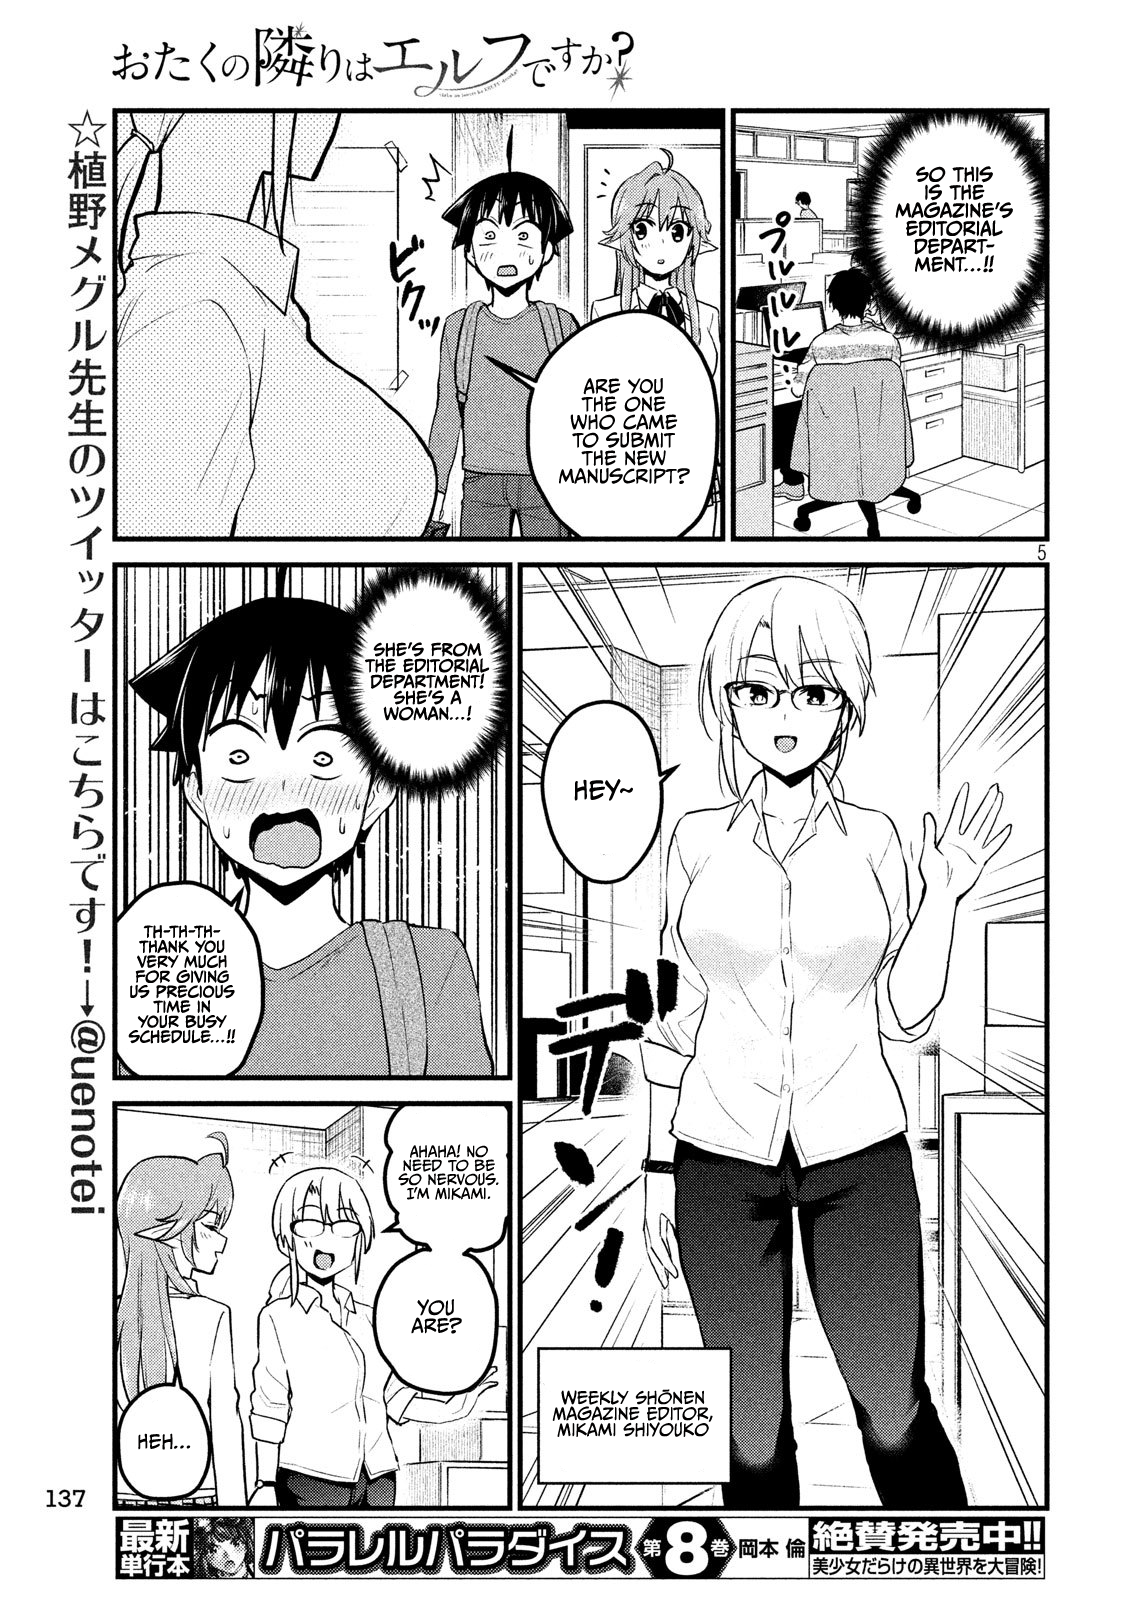 Otaku No Tonari Wa Erufu Desuka? - 8 page 5